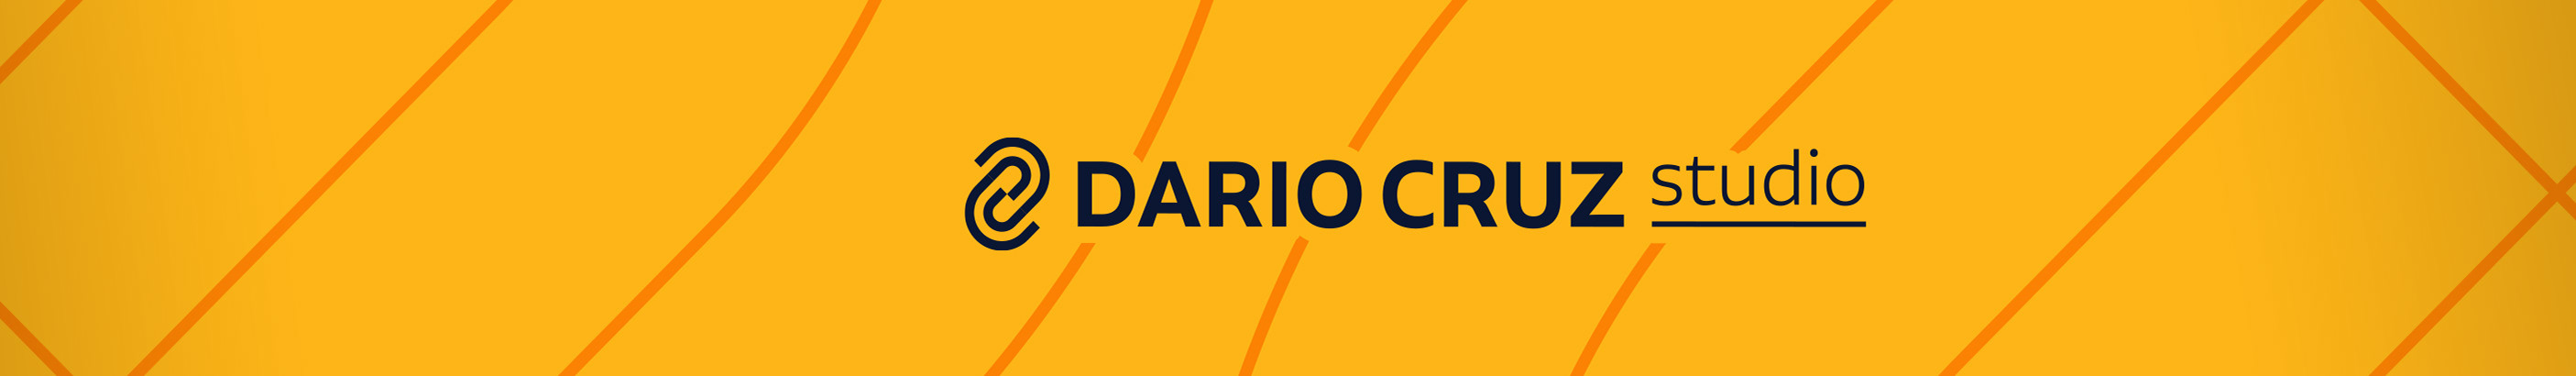 Dario Cruz Silva's profile banner